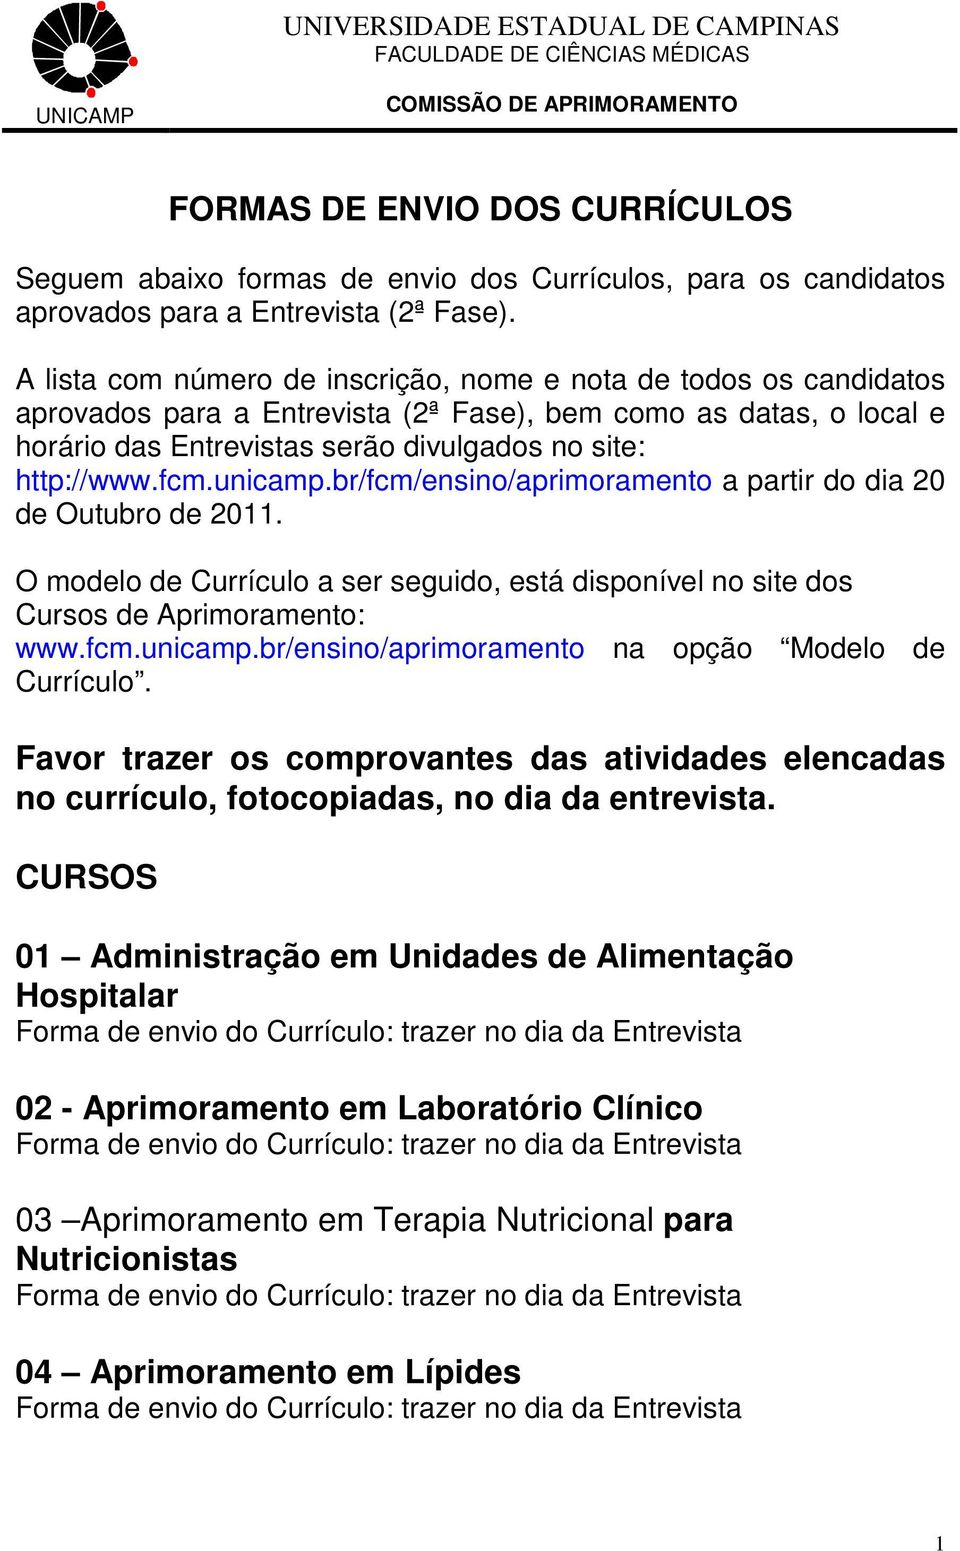 fcm.unicamp.br/fcm/ensino/aprimoramento a partir do dia 20 de Outubro de 2011. O modelo de Currículo a ser seguido, está disponível no site dos Cursos de Aprimoramento: www.fcm.unicamp.br/ensino/aprimoramento na opção Modelo de Currículo.